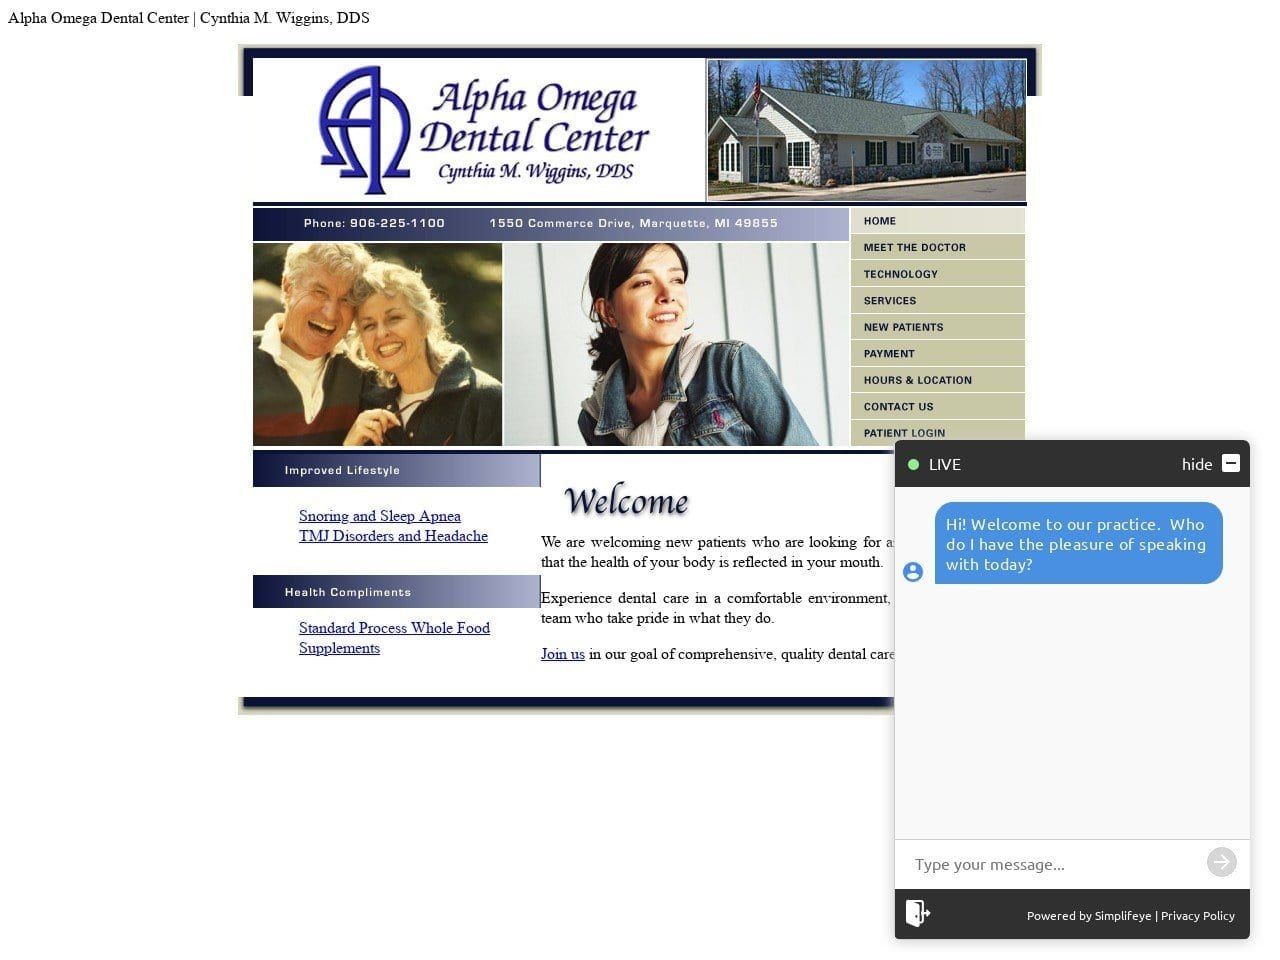 Dr. Cynthia M. Wiggins DDS Website Screenshot from alphaomegadentalcenter.com